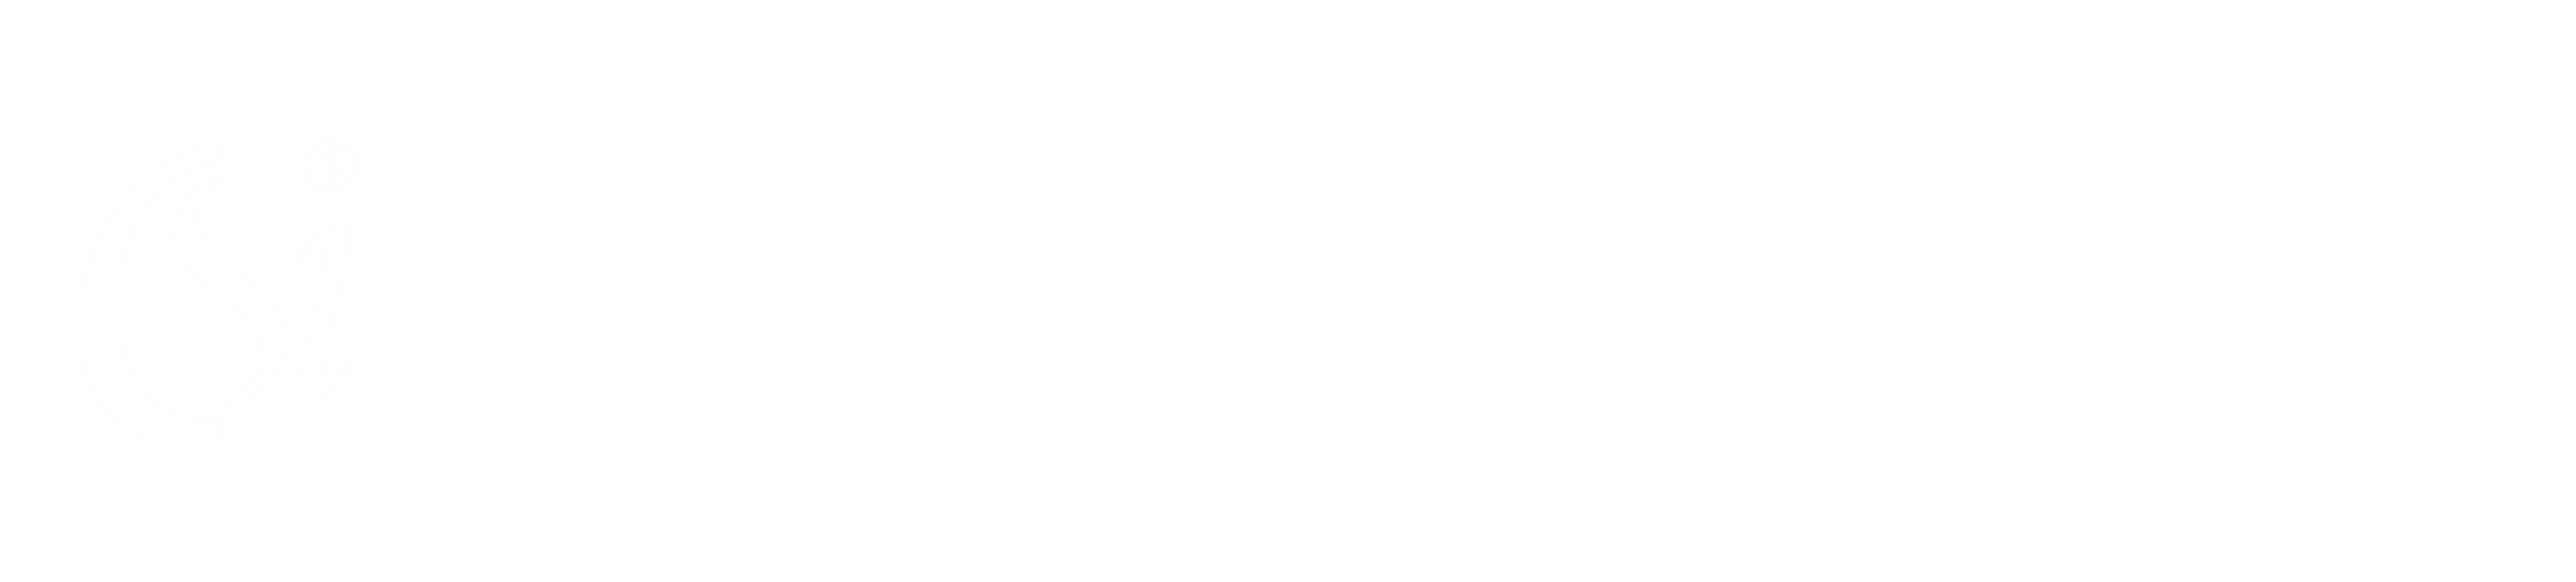 Community Science Institute